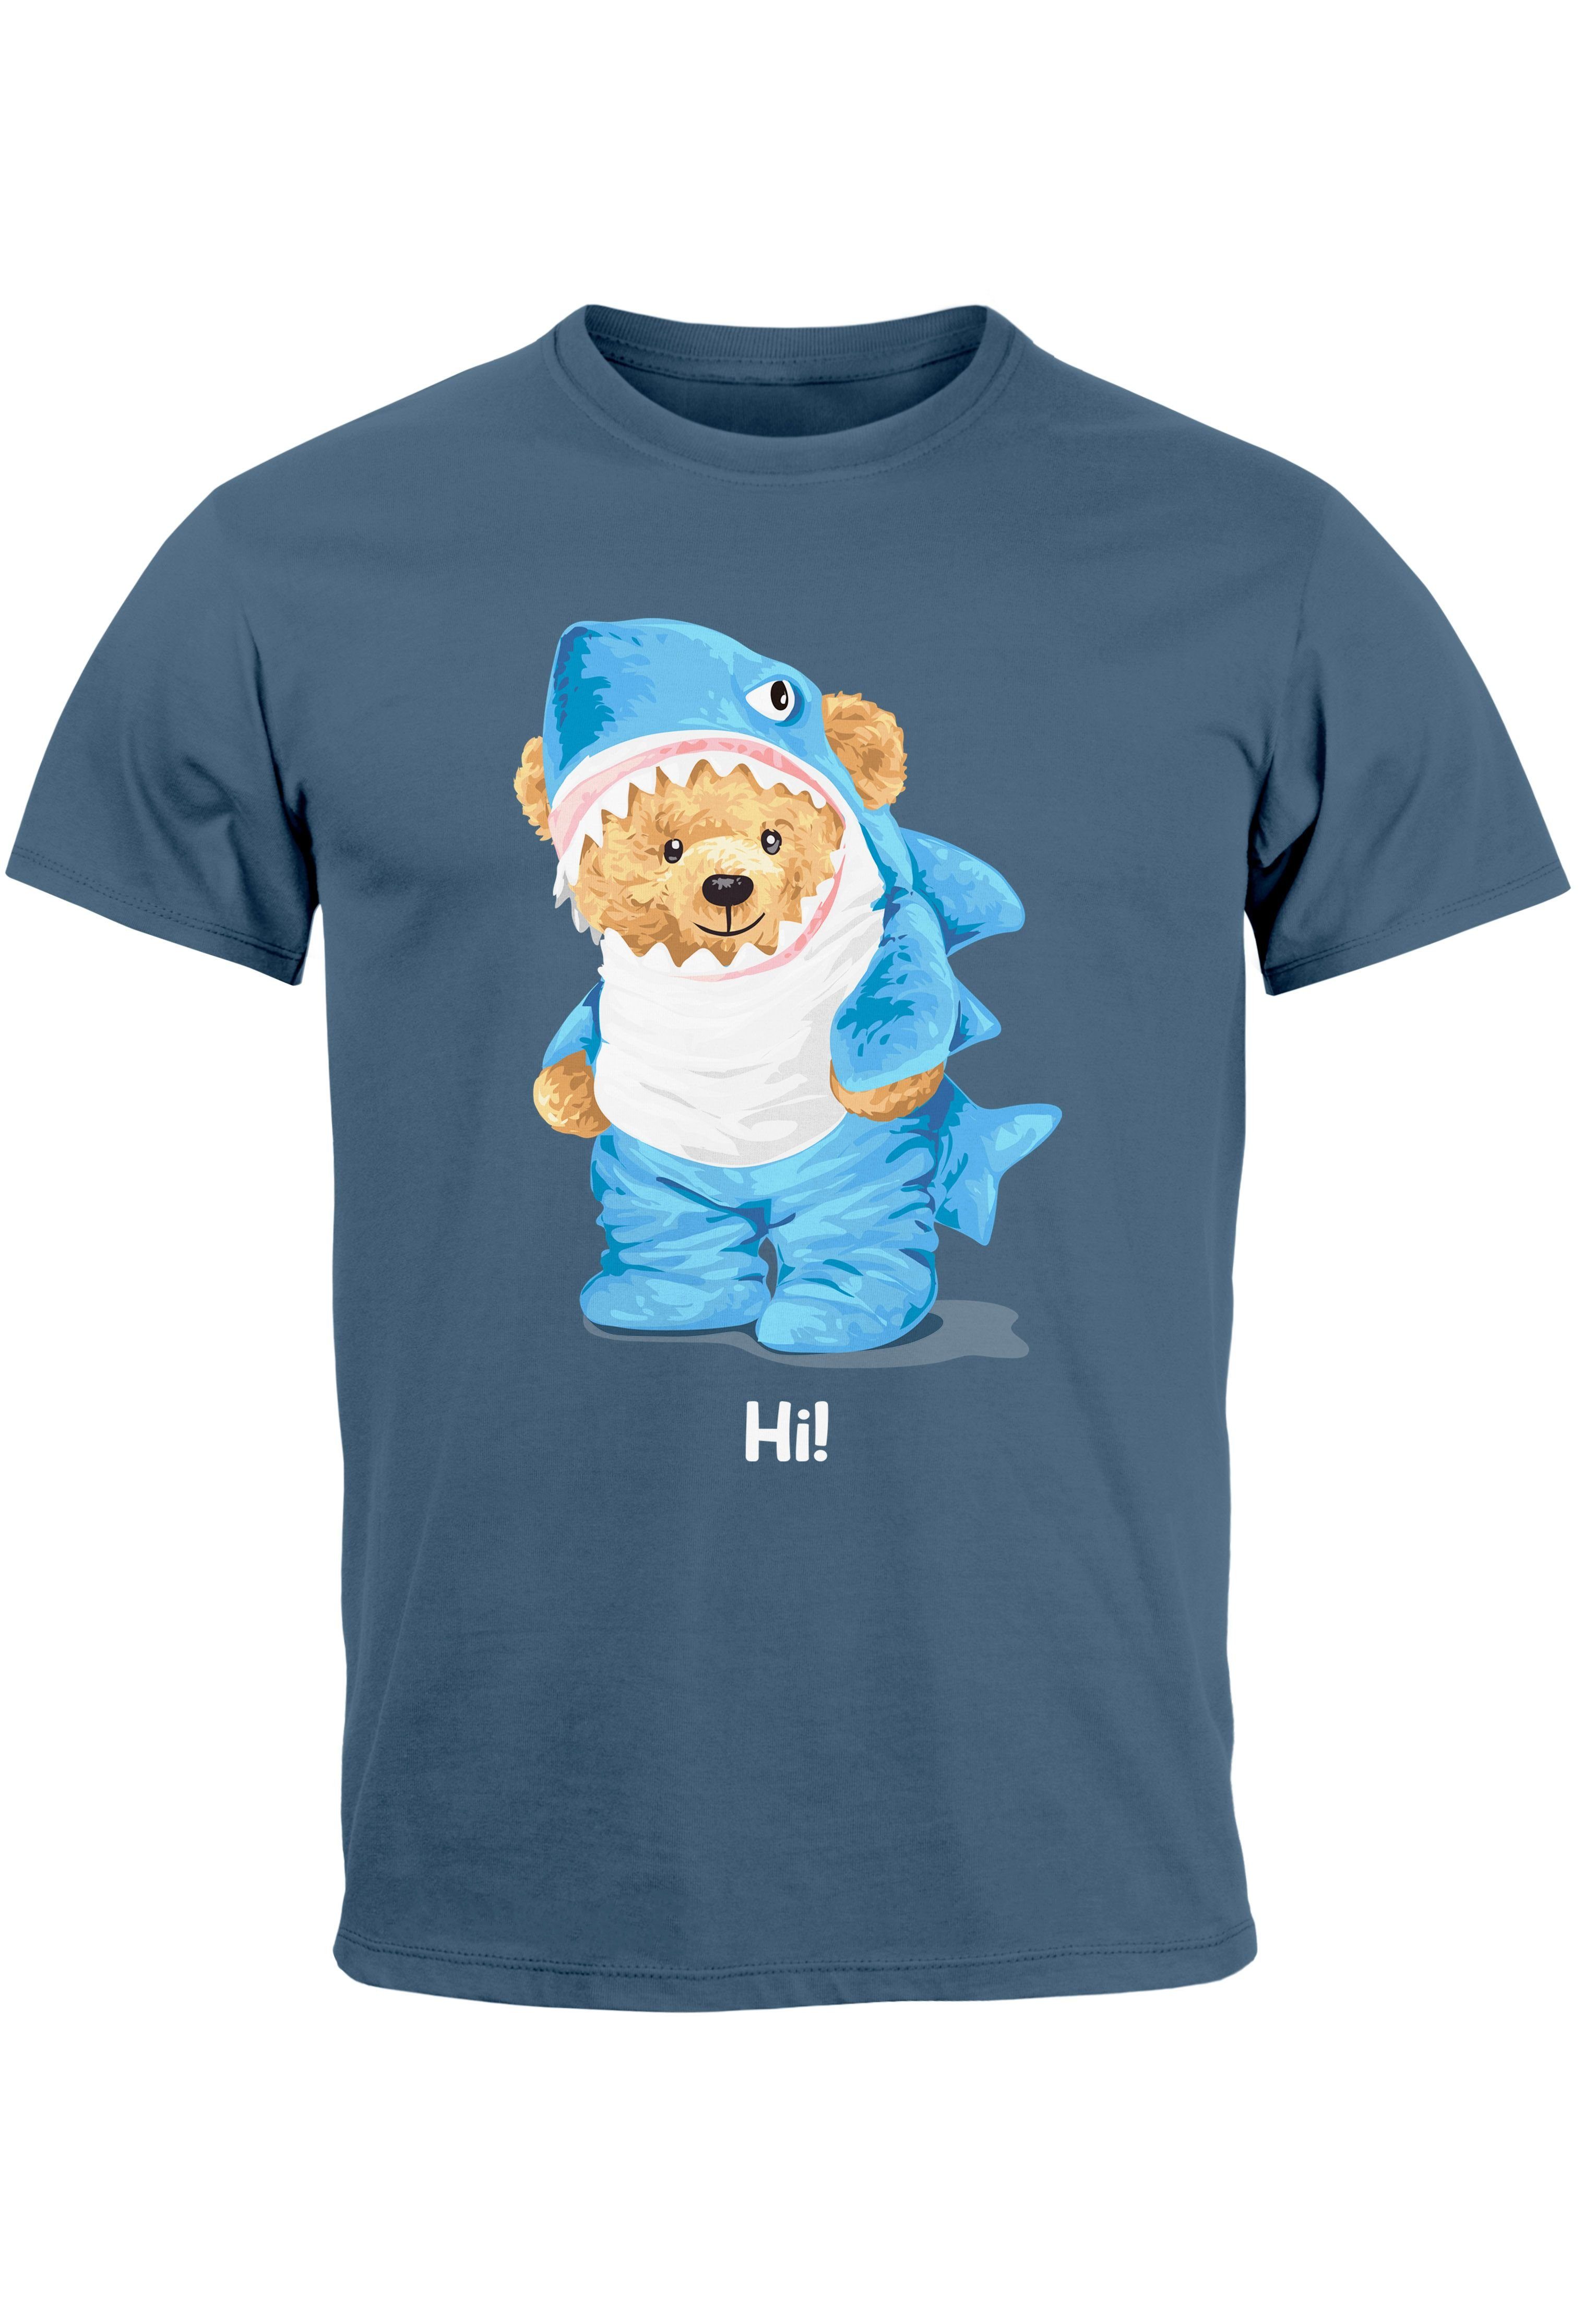 Neverless Print-Shirt Herren T-Shirt Hai Hi Teddy Bär Witz Parodie Printshirt Aufdruck Fashi mit Print denim blue | T-Shirts